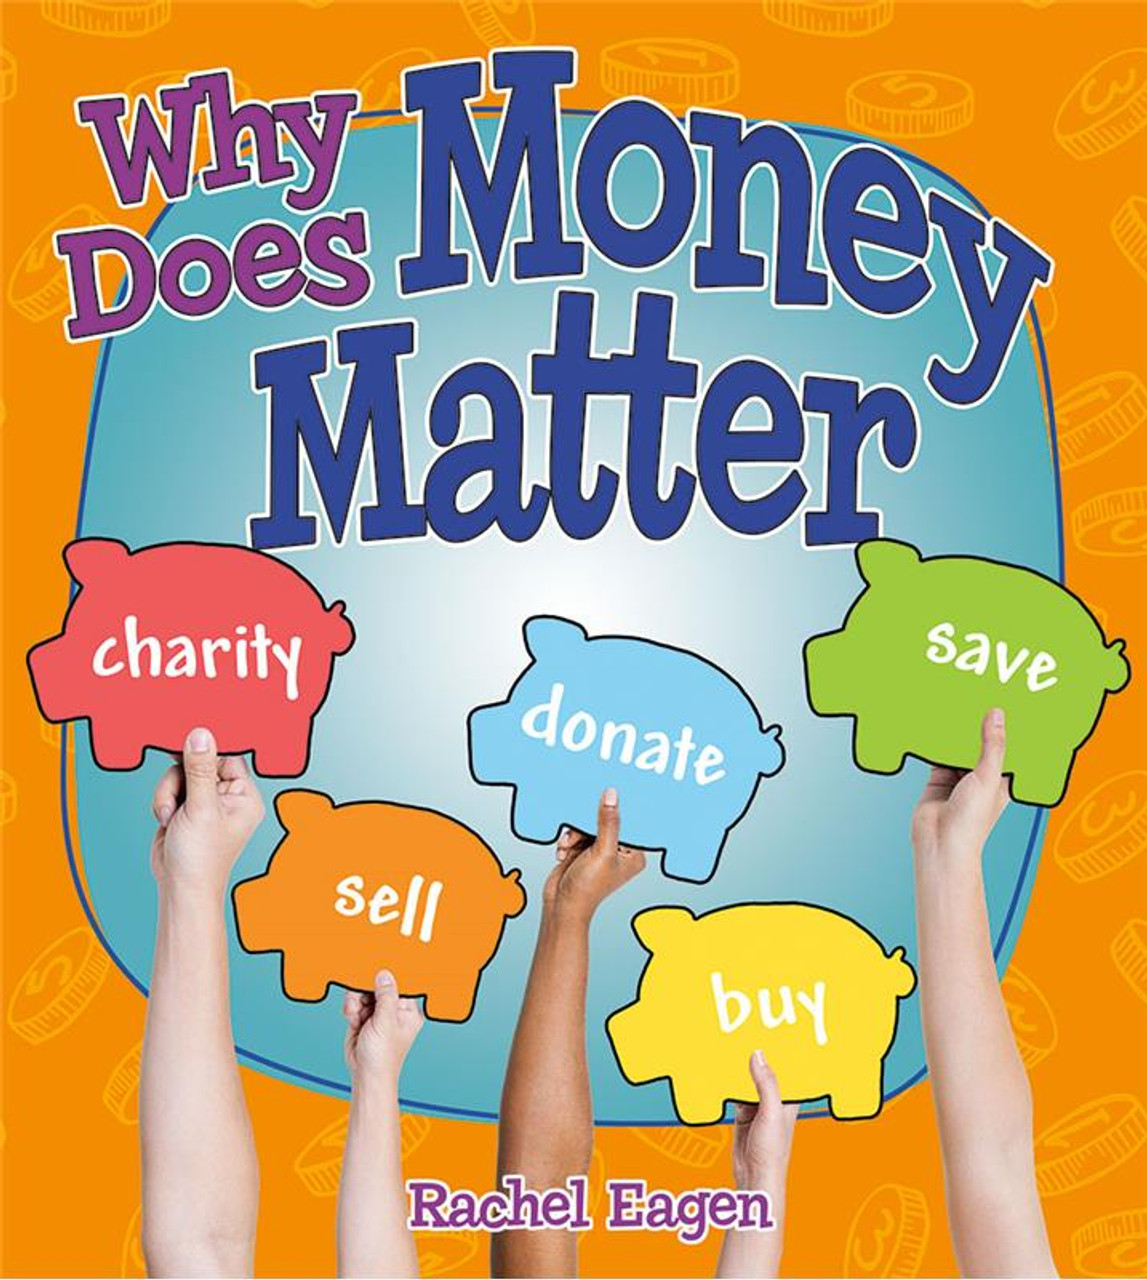 Why Does Money Matter? by Rachel Eagen